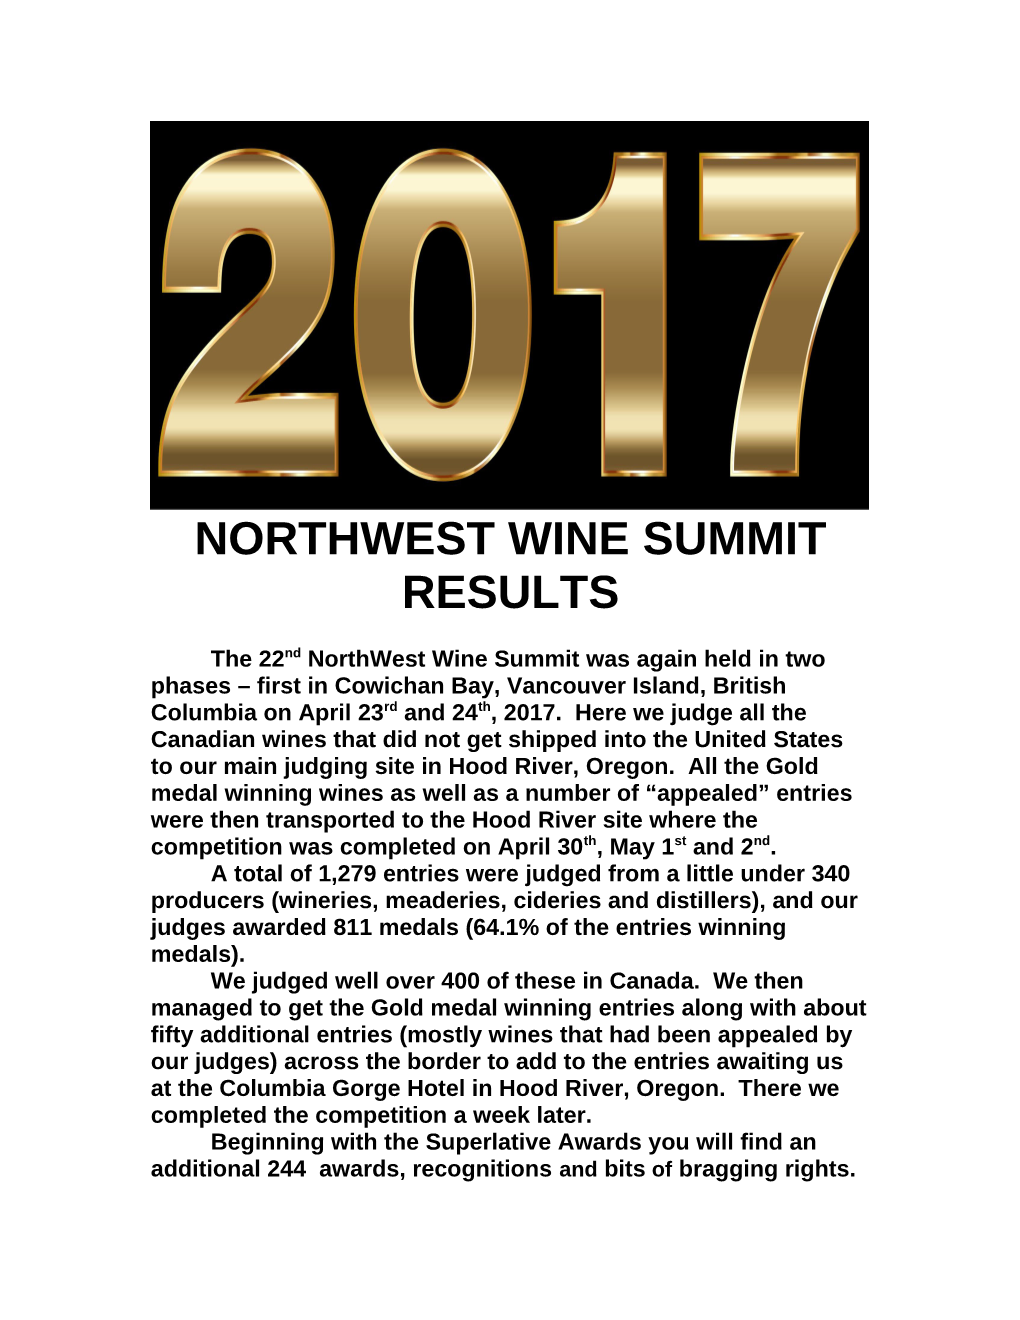 Northwest Wine Summit